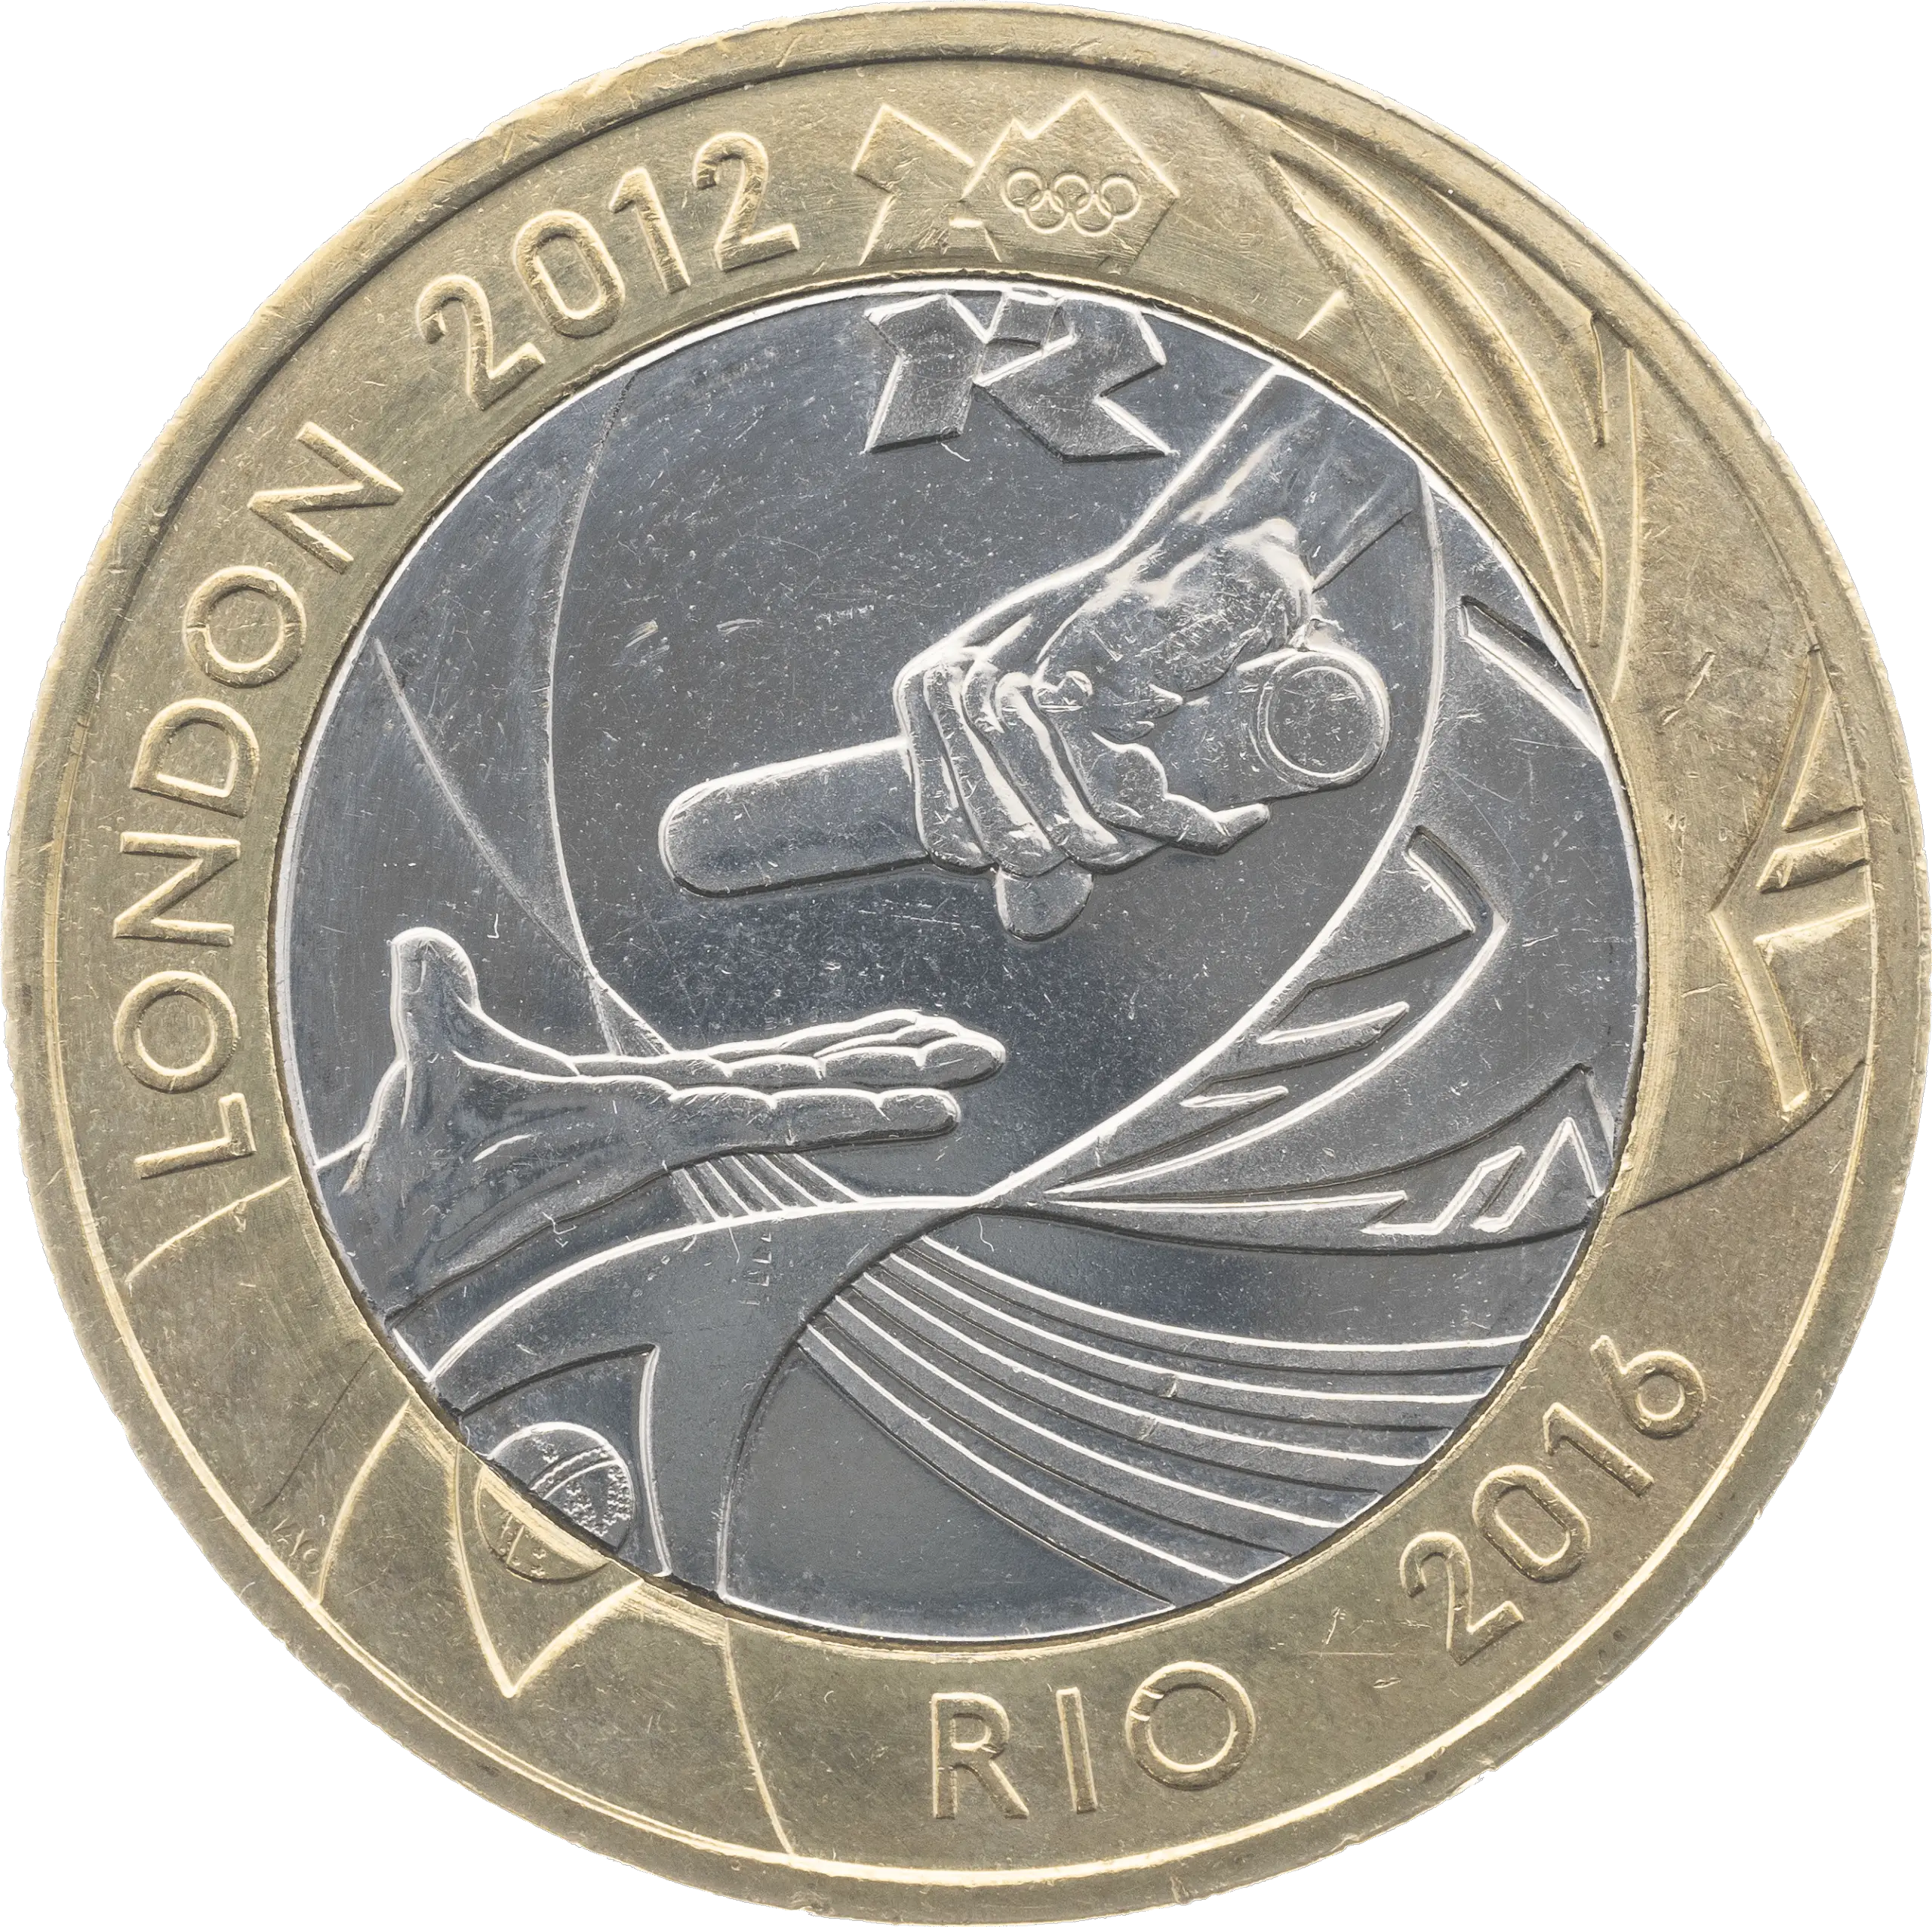 Olympic Handover to Rio £2 Coin